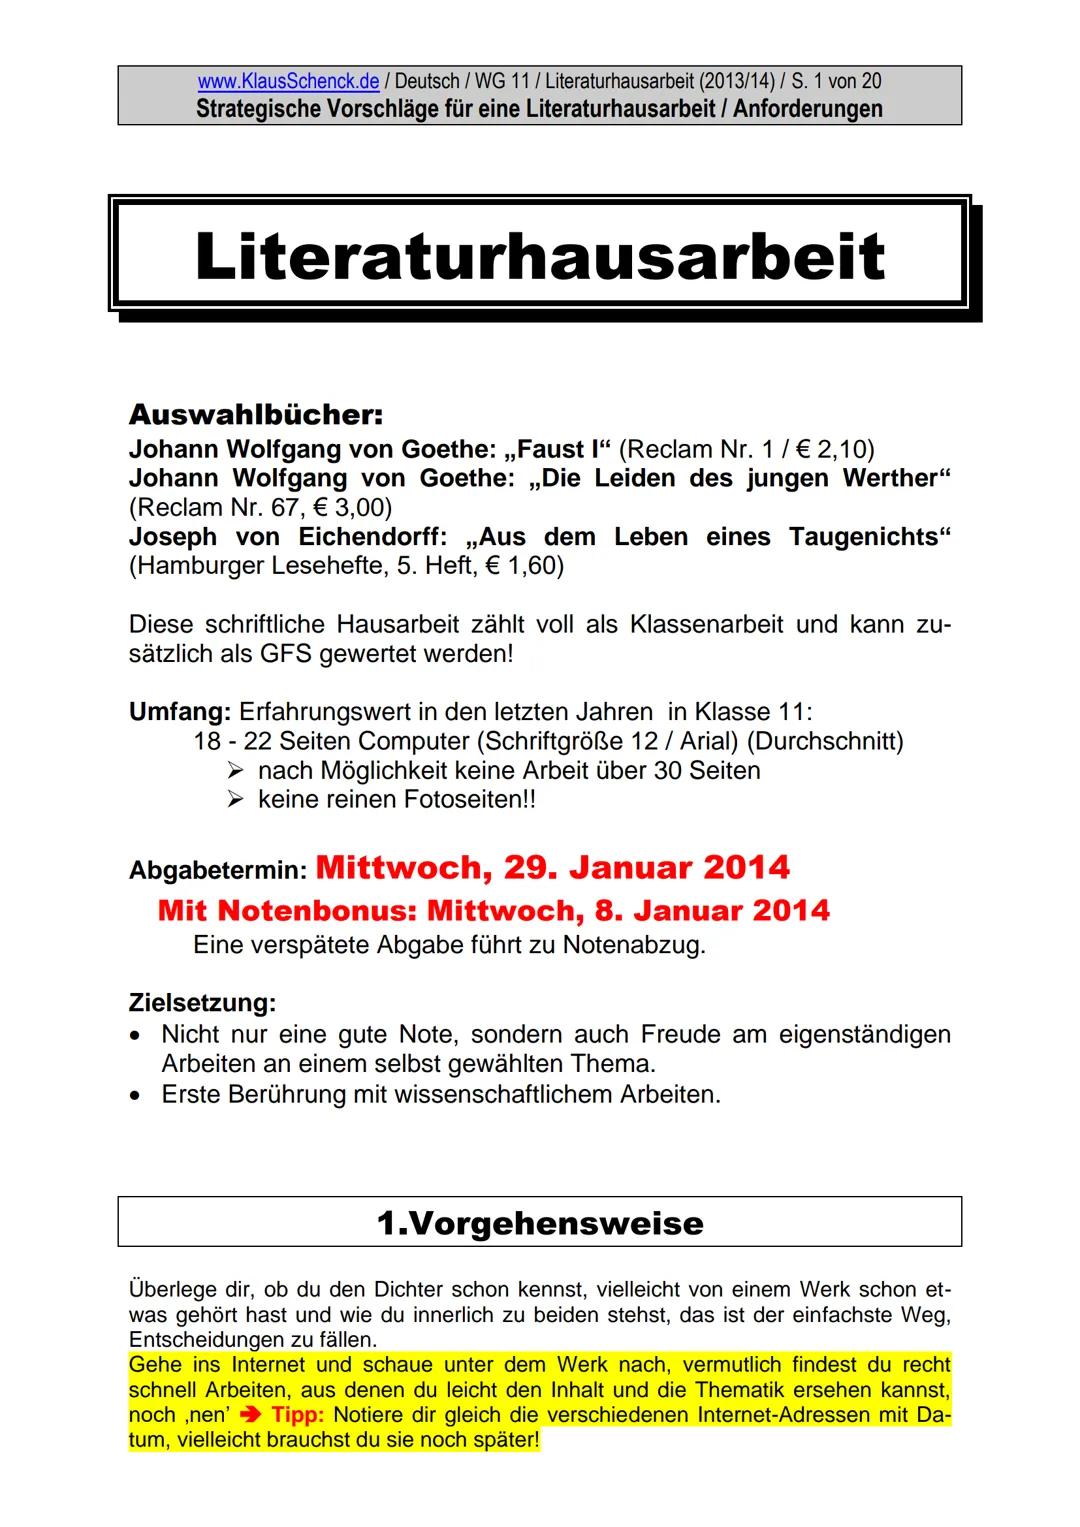 www.KlausSchenck.de / Deutsch / Literatur / Horváth: ,,Jugend ohne Gott" / Seite 2 von 38
Sara: Literaturhausarbeit (WG 11/08/09)
1. Einleit